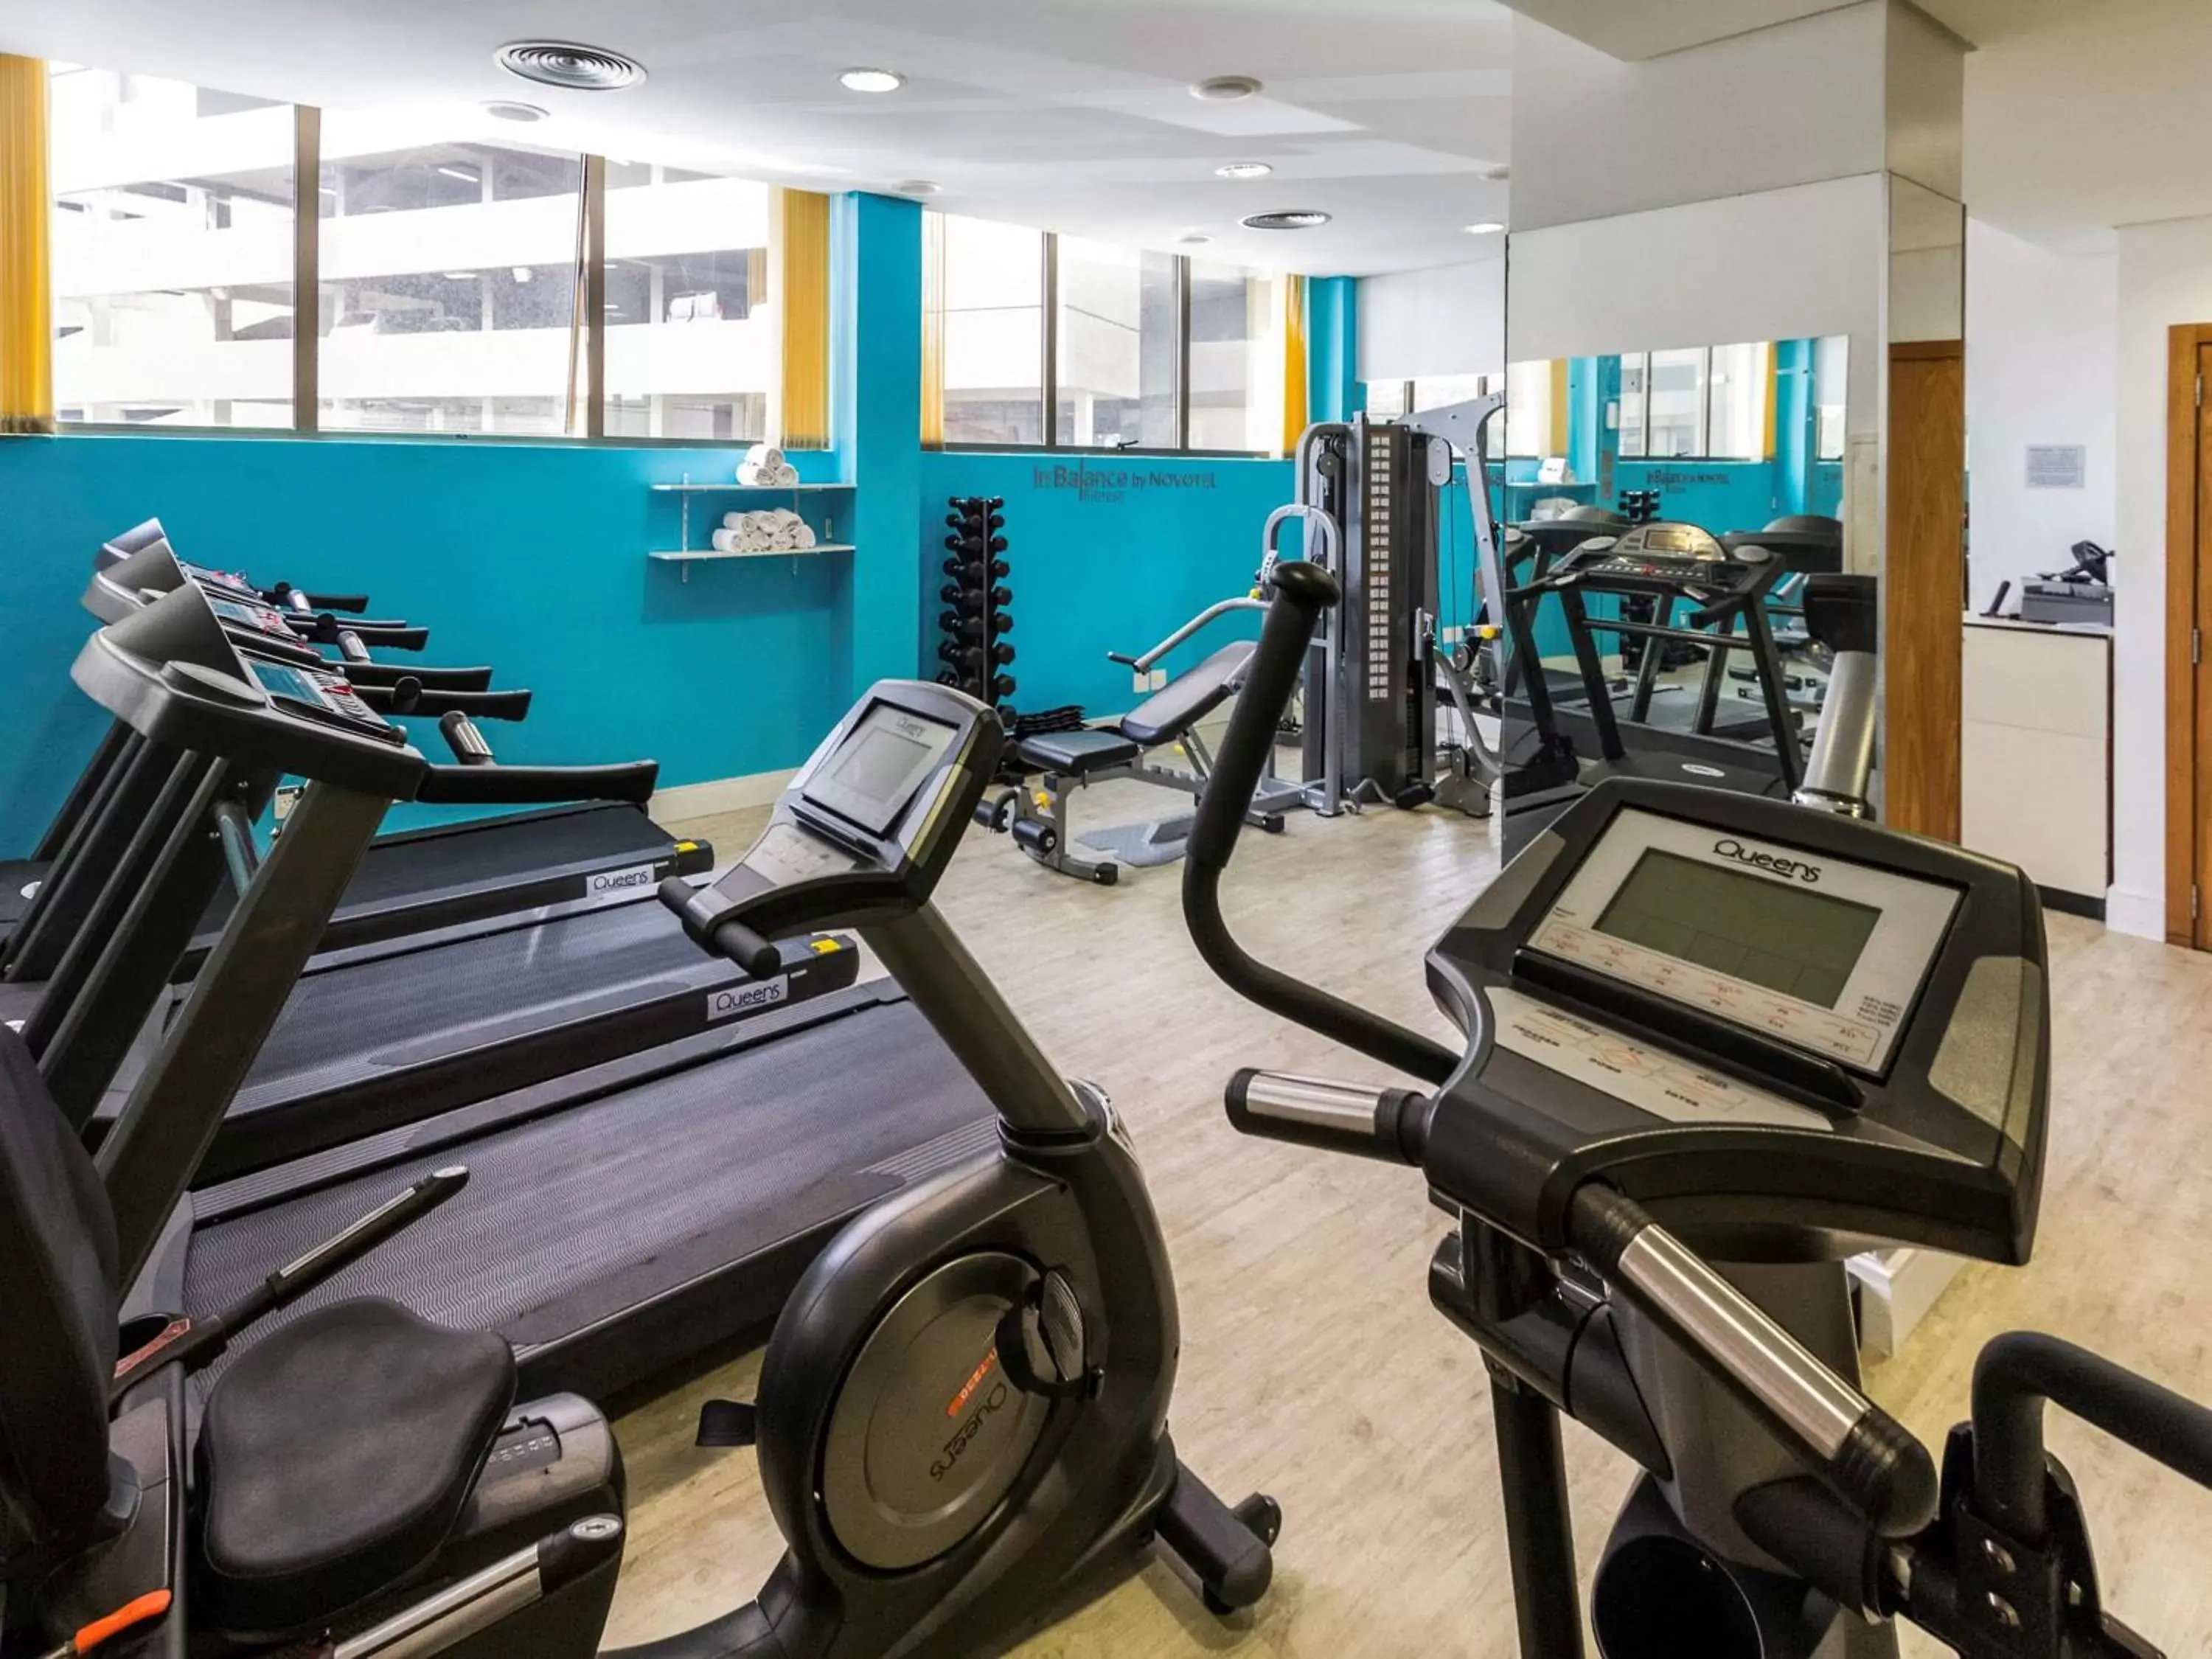 Fitness centre/facilities, Fitness Center/Facilities in Novotel Porto Alegre Tres Figueiras